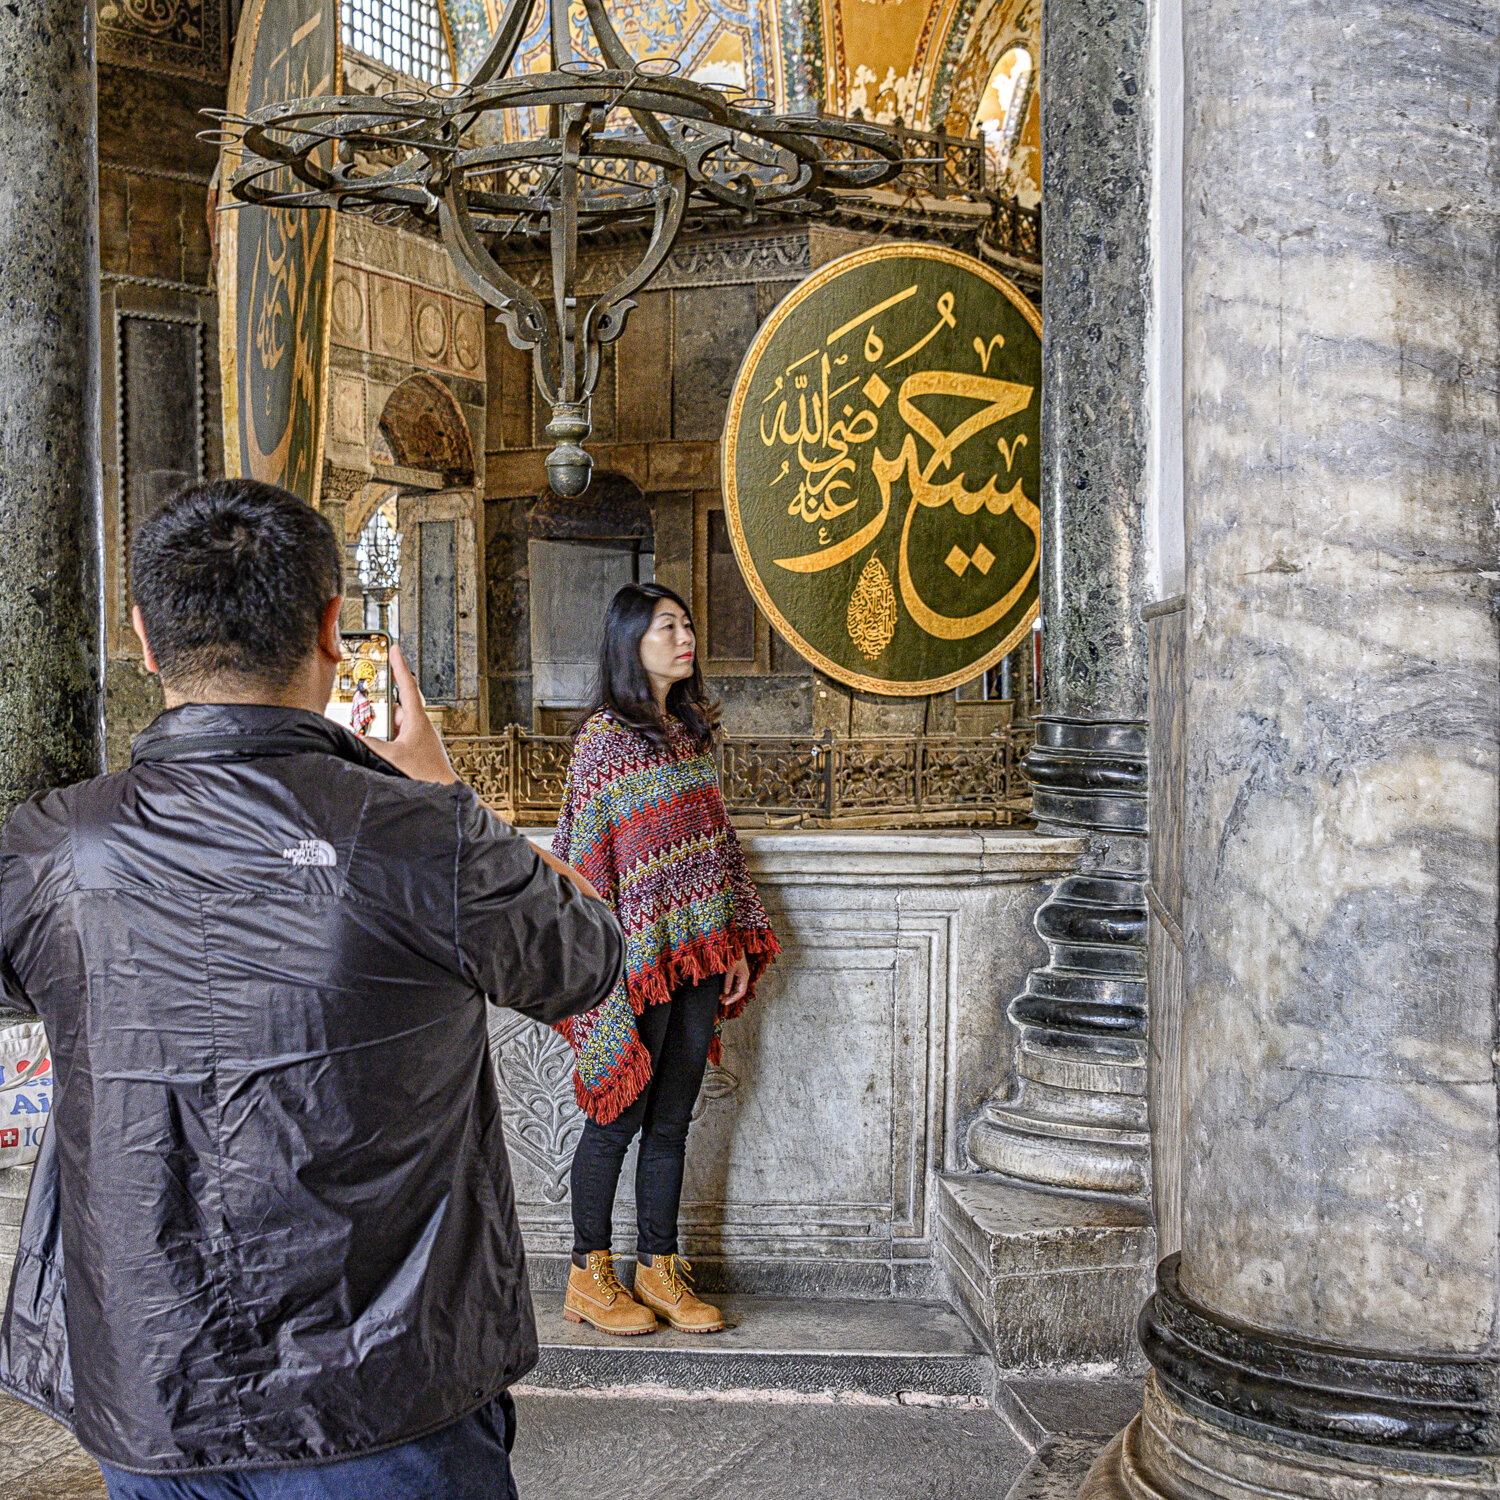 Posing - II: Hagia Sophia, Istanbul, Turkey